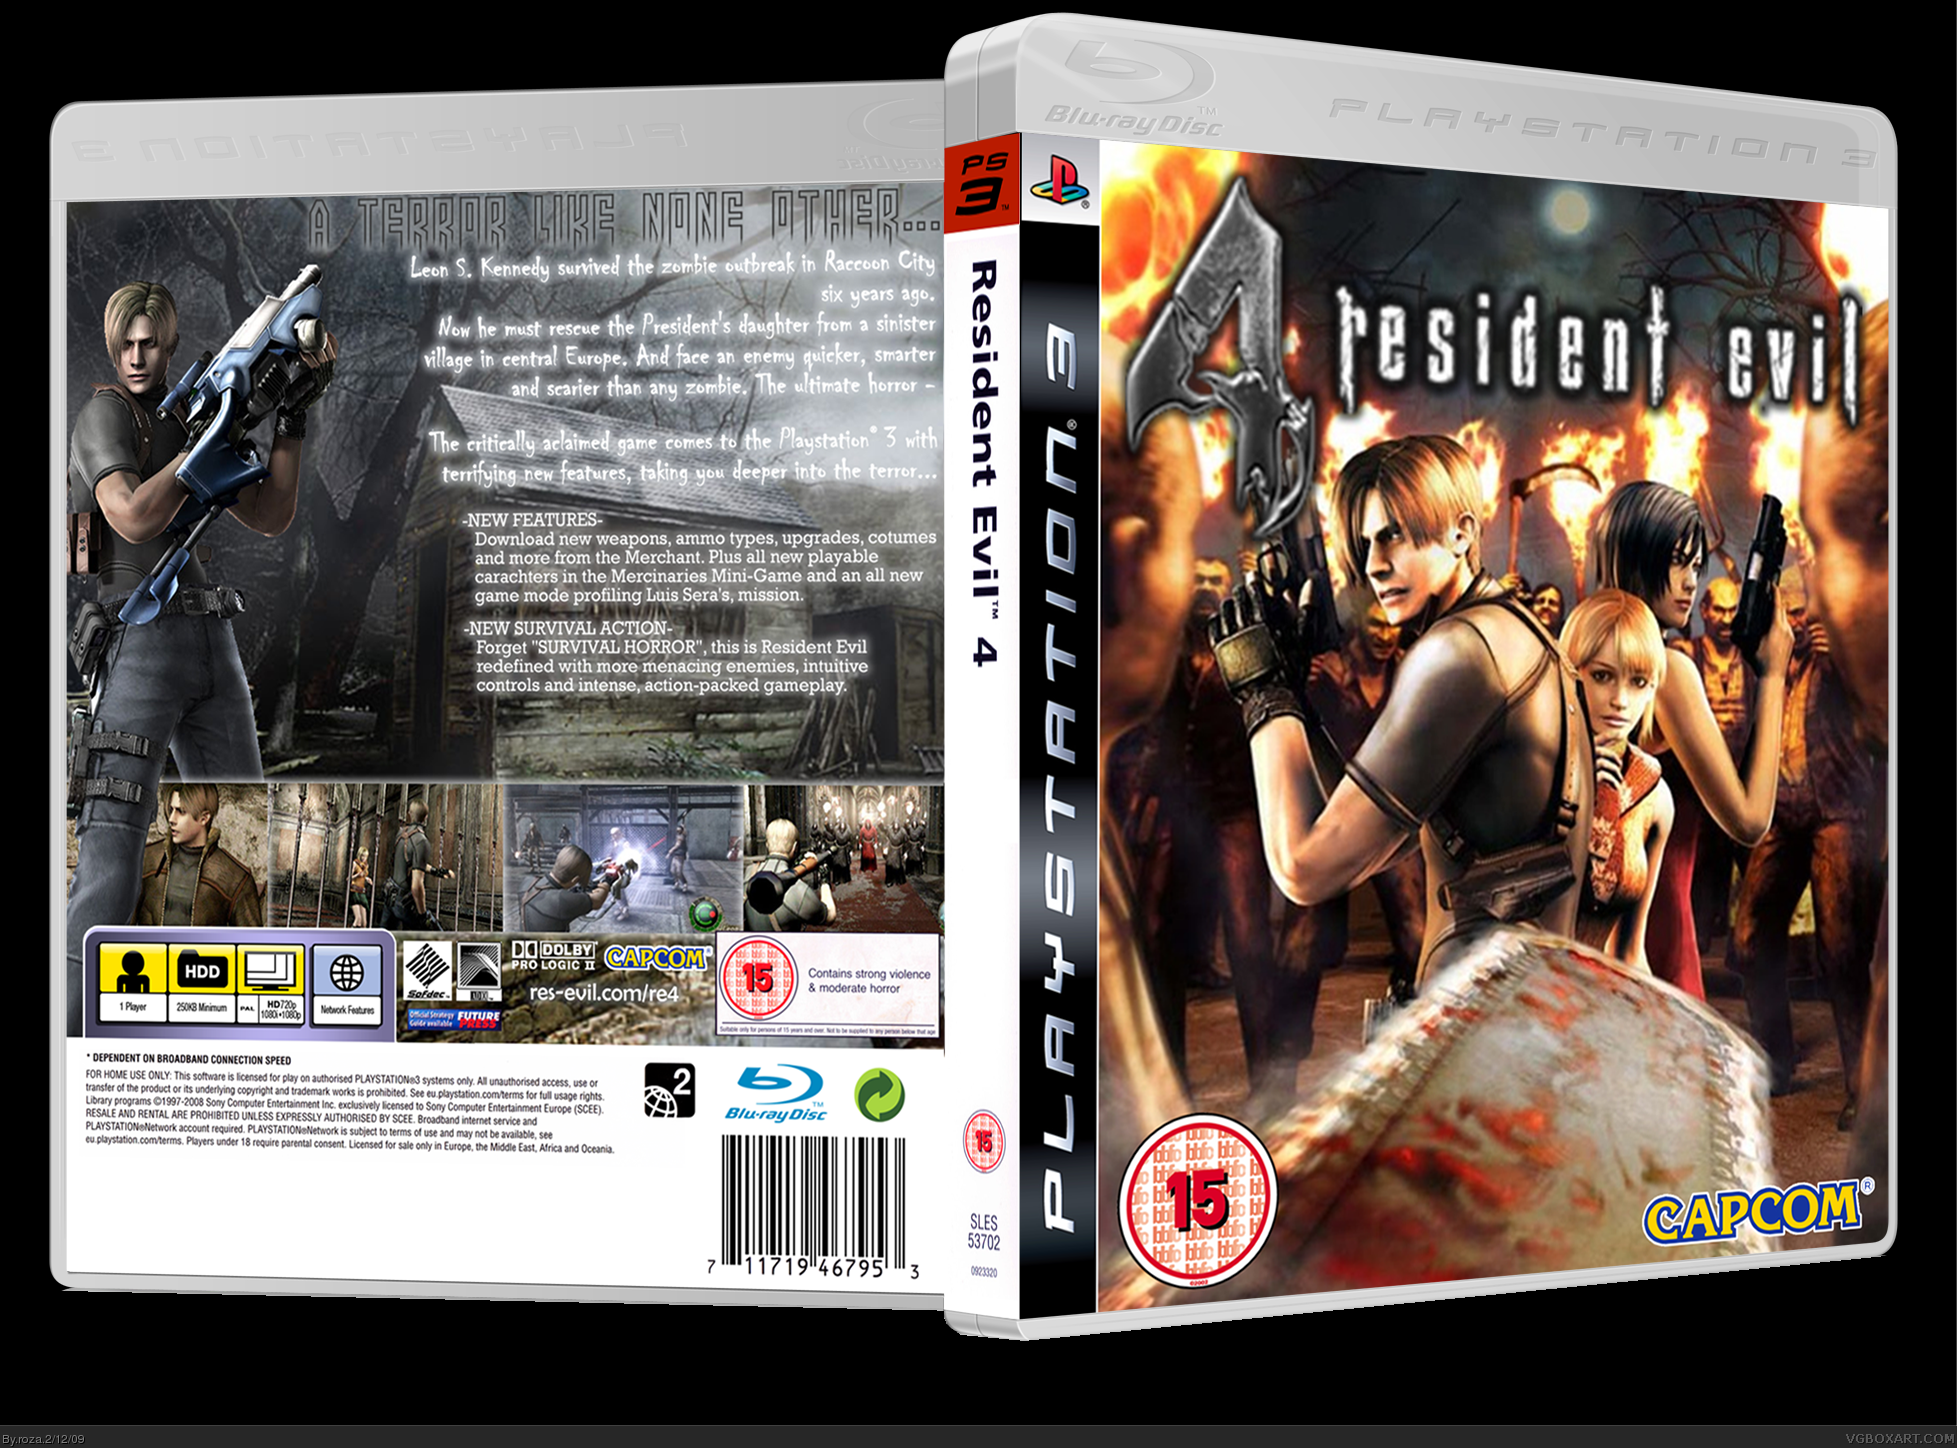 Resident evil 3 ps4. Resident Evil 4 ps2 диск. Resident Evil ps3 диск. PLAYSTATION 4 Resident Evil 3. Resident Evil 4 на ПС 4 диск.